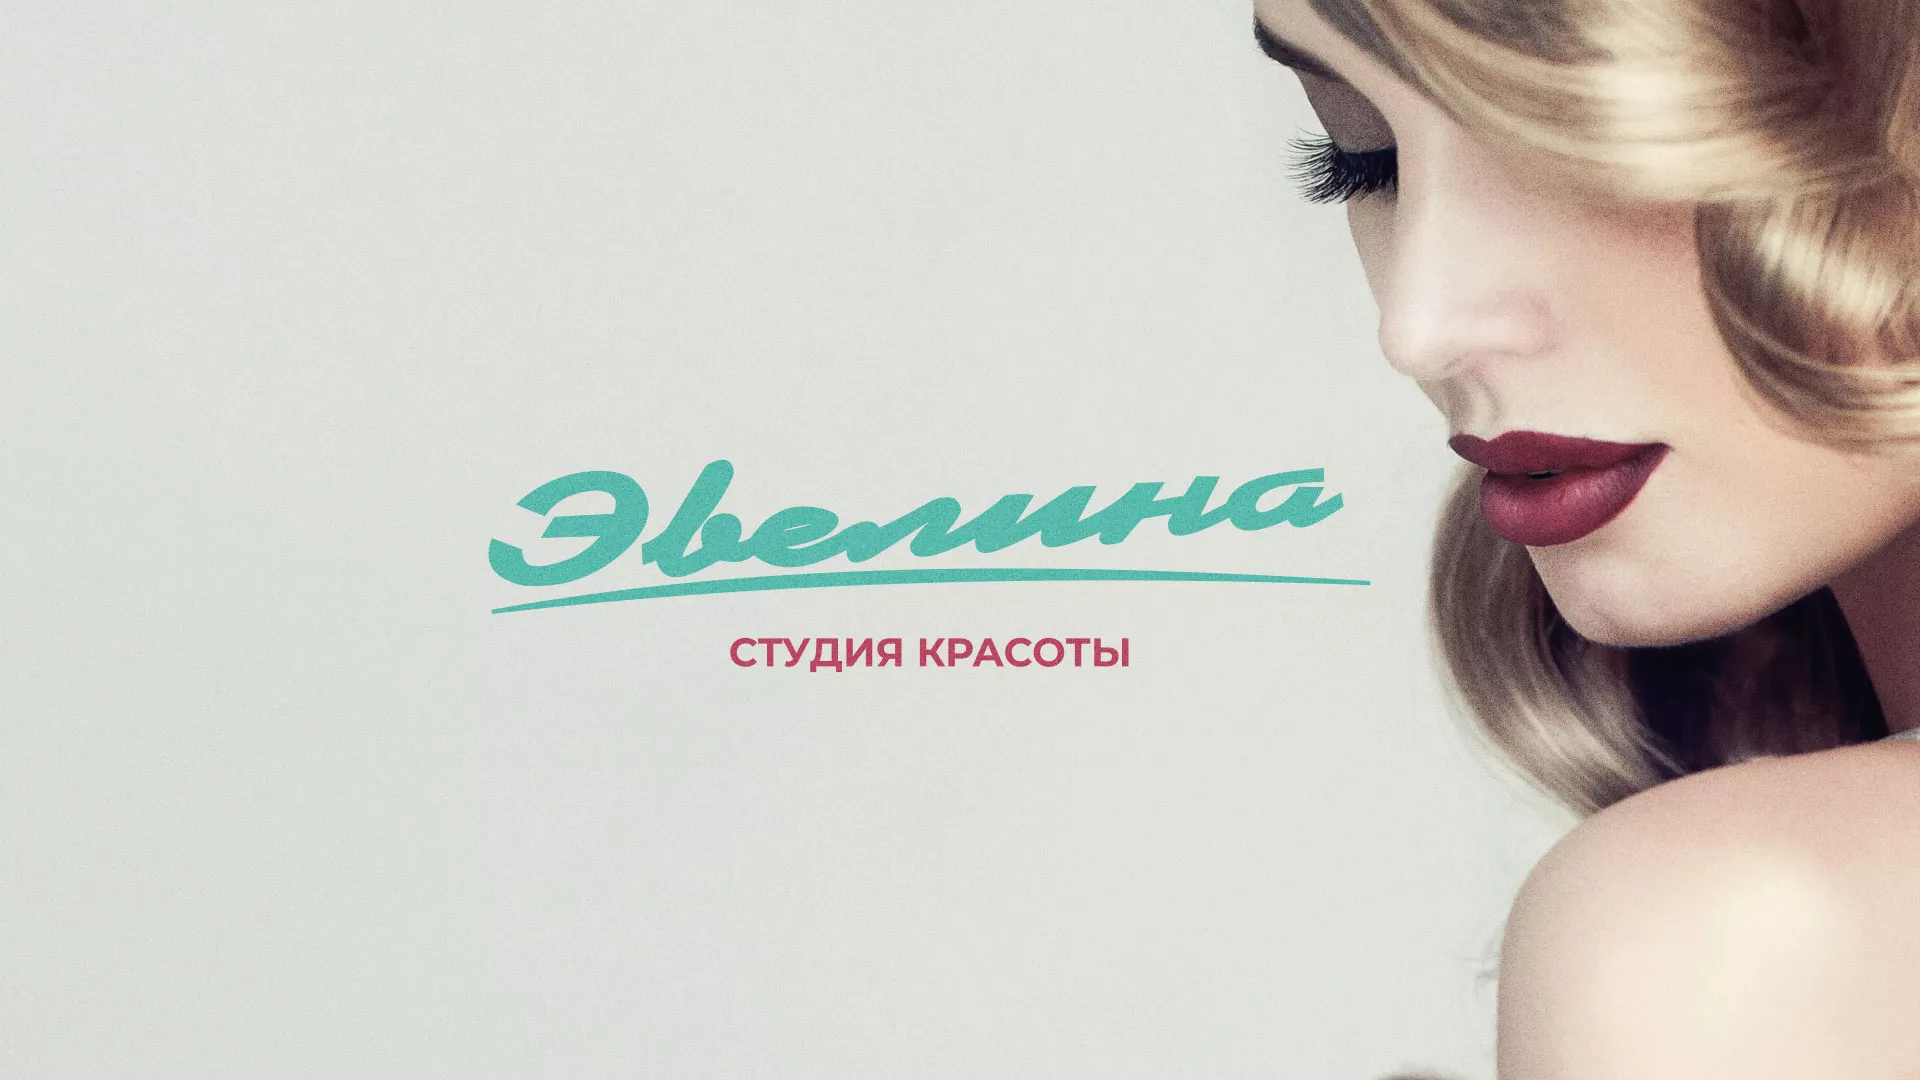 Разработка сайта для салона красоты «Эвелина» в Казани